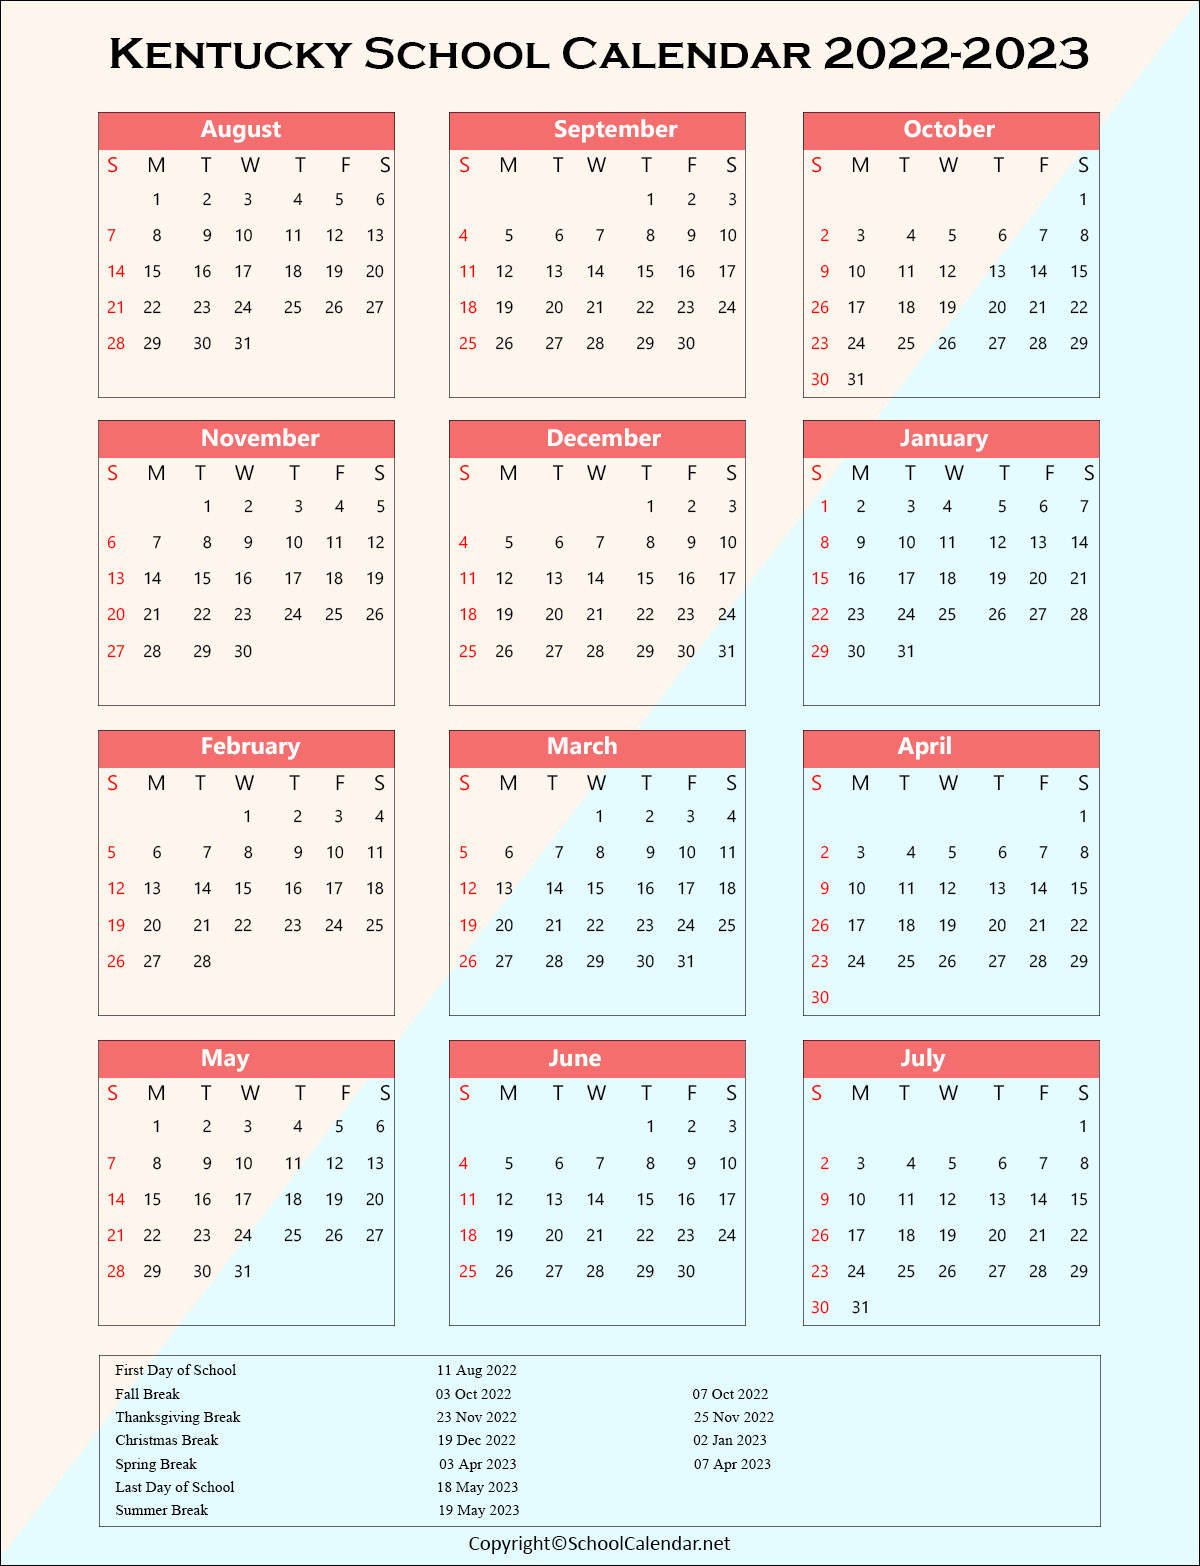 Kentucky School Holiday Calendar 2022